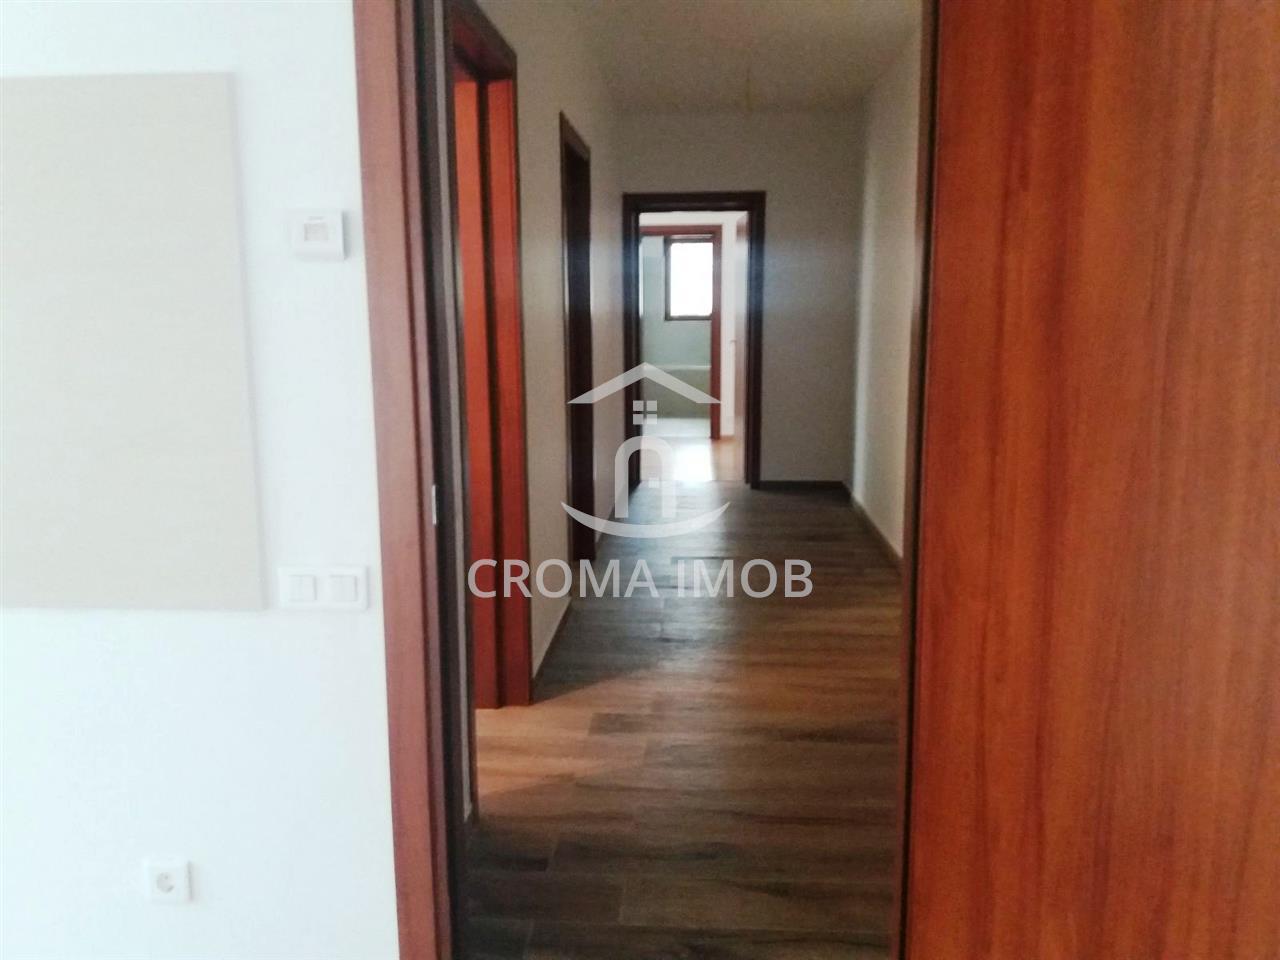 CromaImob - Inchiriere apartament 3 camere, zona Ultracentrala